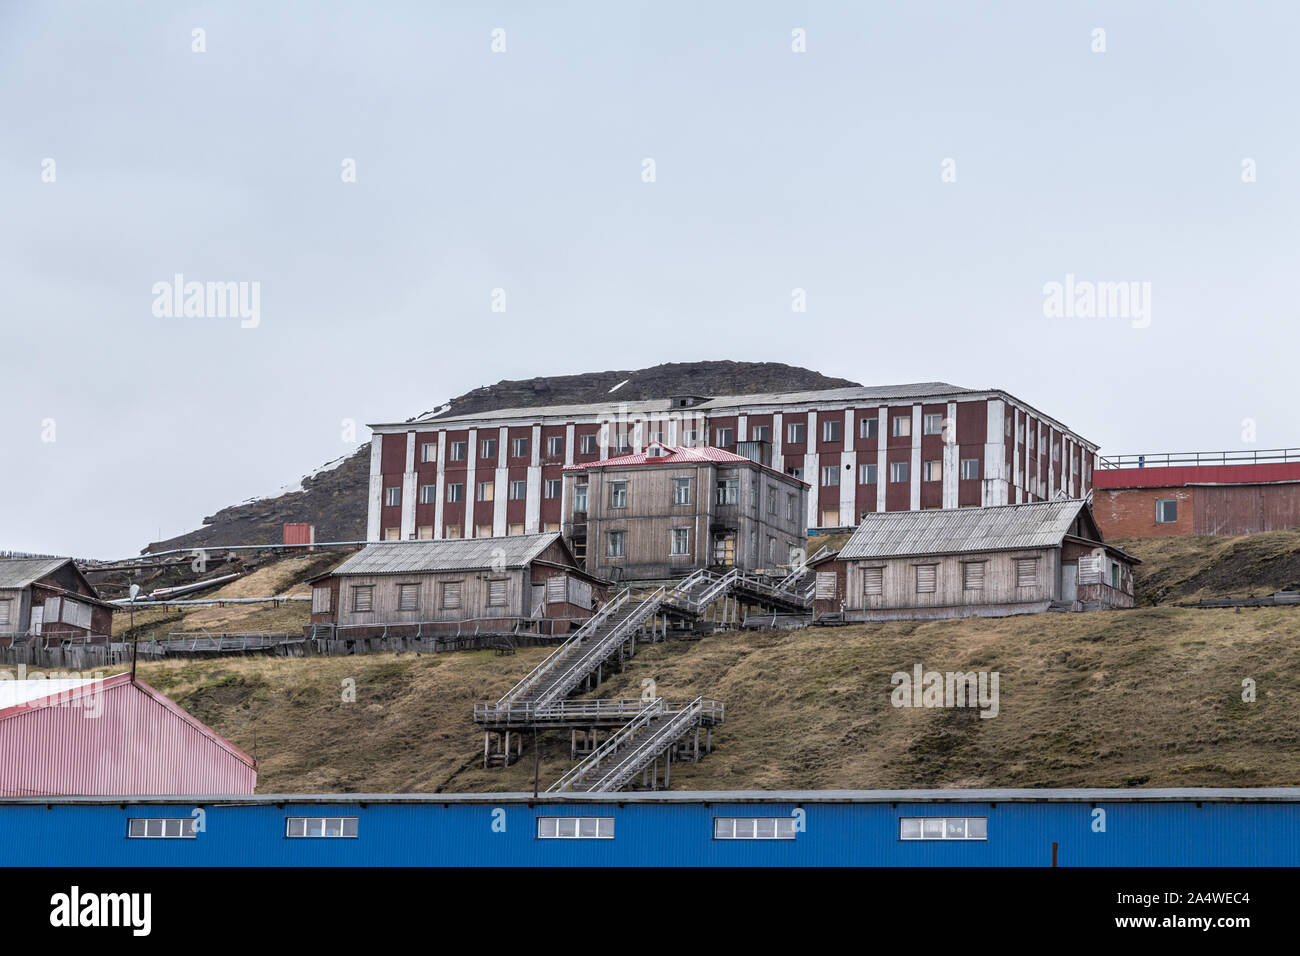 Vieux bâtiment dans l'extraction du charbon russe Barentsburg règlement à Svalbard, Spitzberg, la Norvège dans l'Arctique Banque D'Images